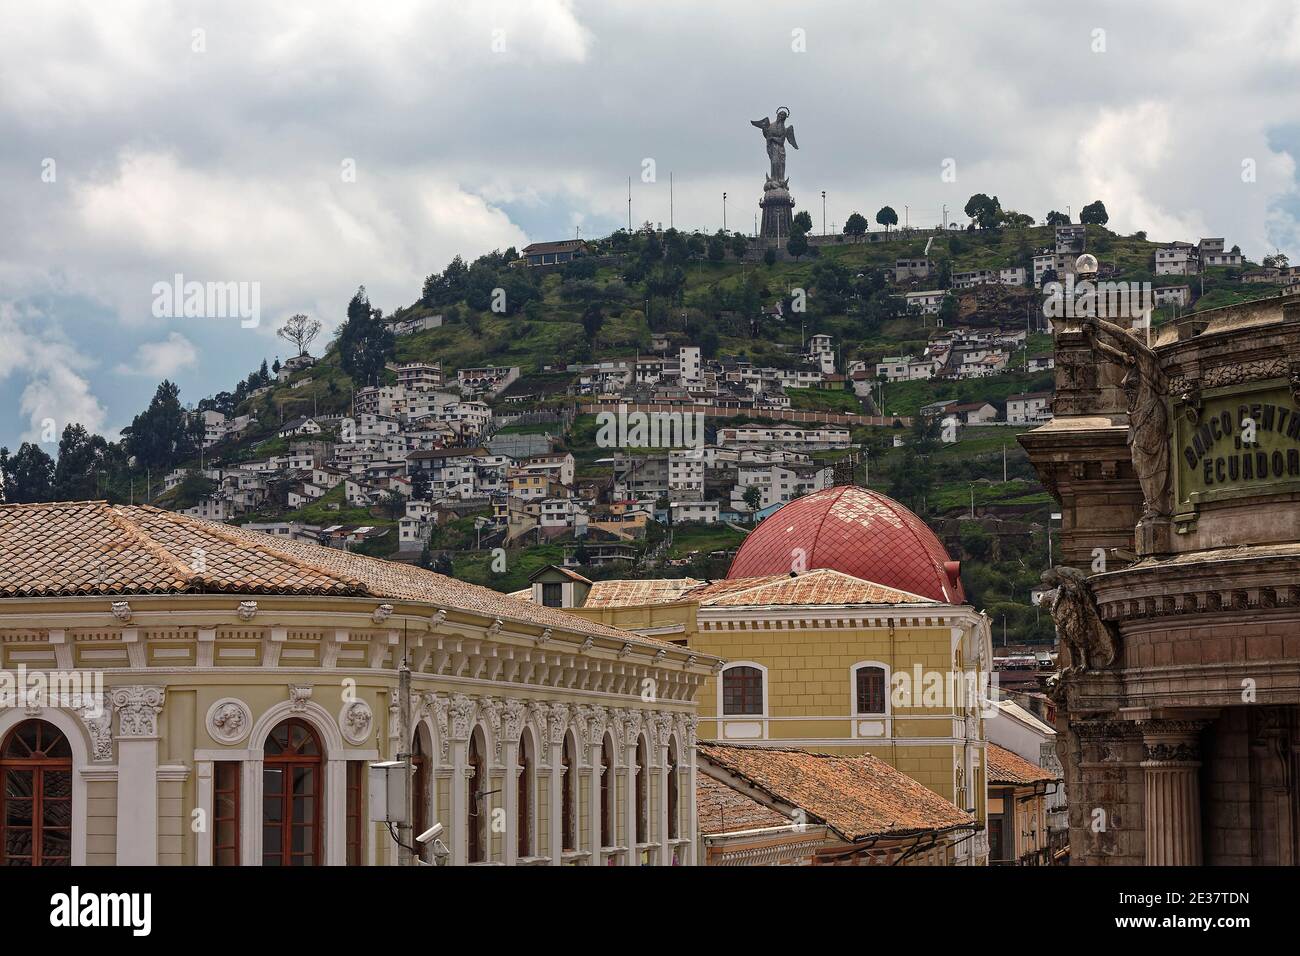 Vue sur la ville, vieux bâtiments, colline, El Panecillo, statue de la Vierge de Quito, ciel nuageux, Amérique du Sud, Quito, Equateur Banque D'Images